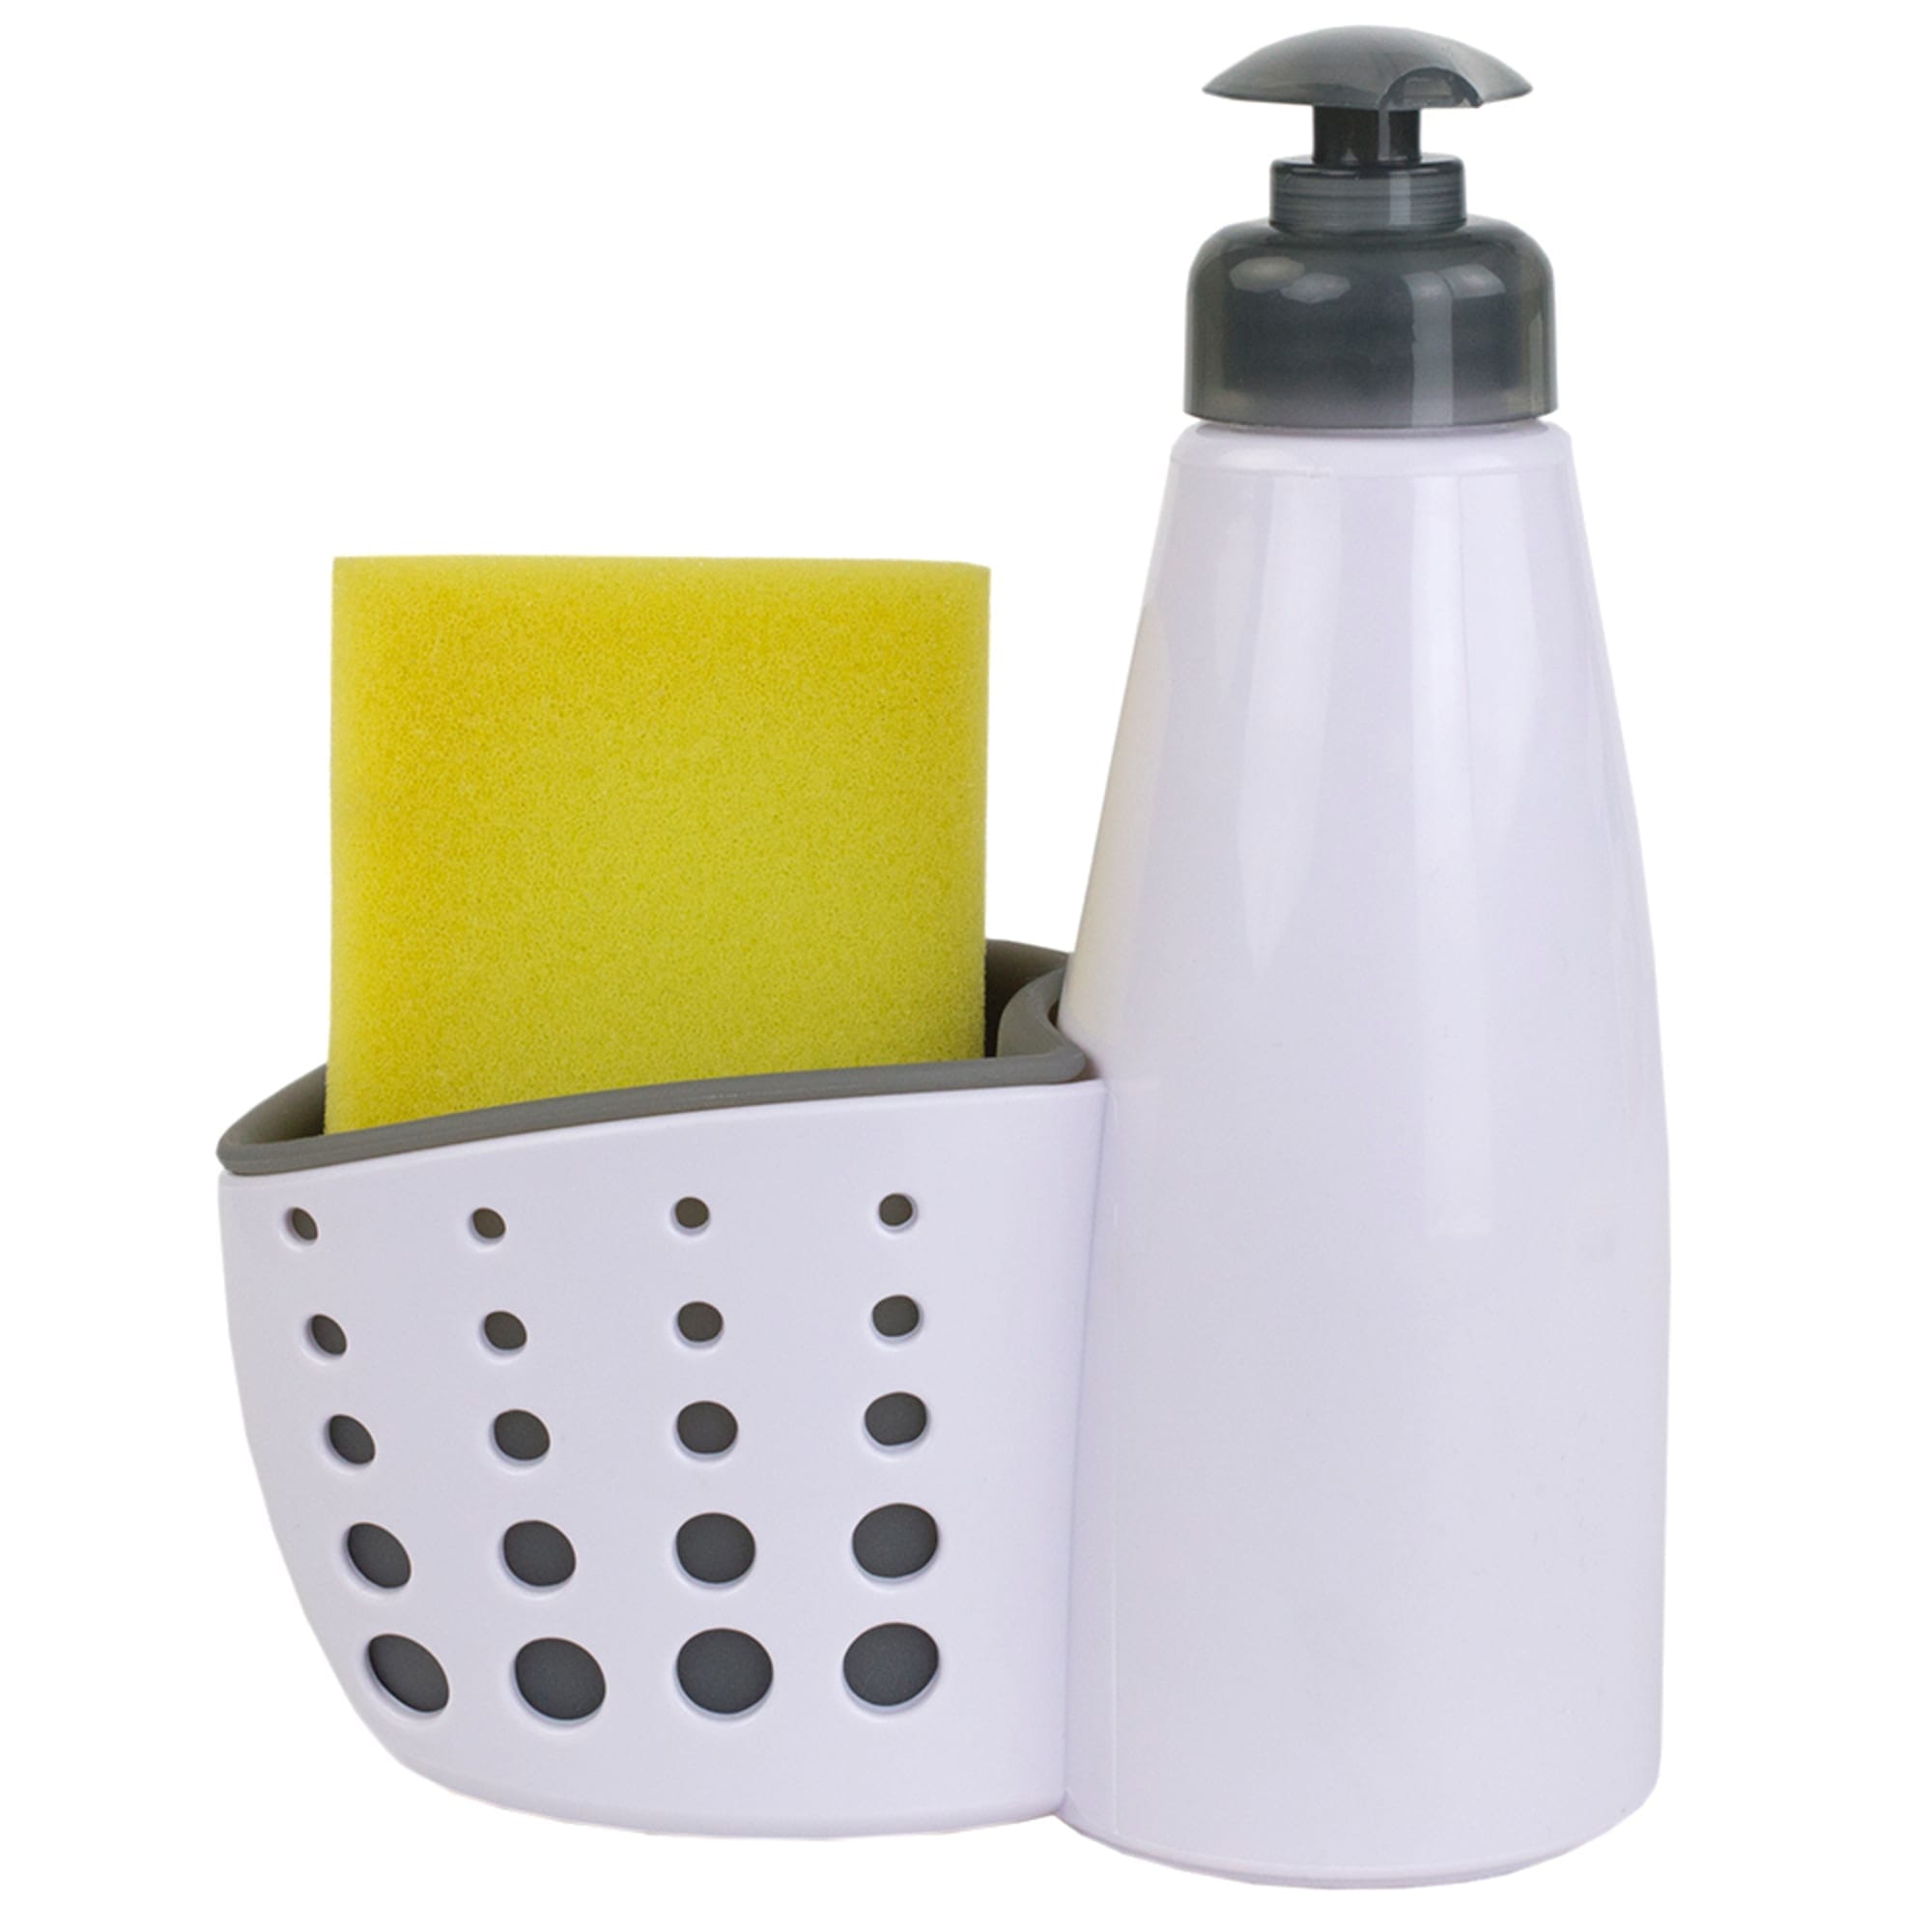 Home Basics Soap Dispenser with Sponge Holder, White